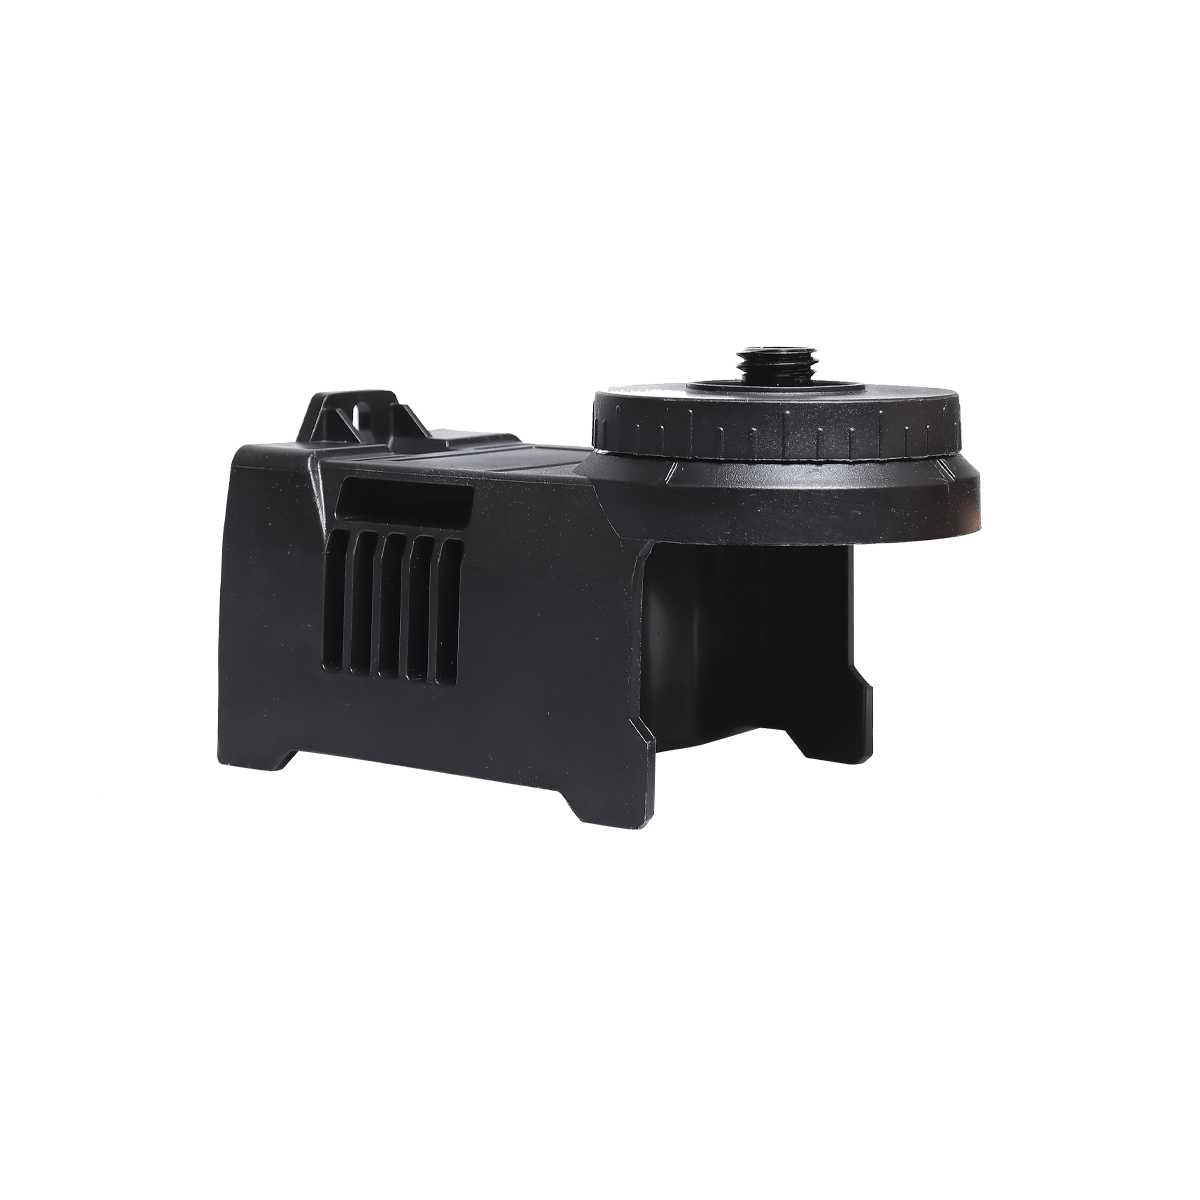 HUEPAR PV5 - Magnetic Bracket Level Adapter HUEPAR EU - Laser Level